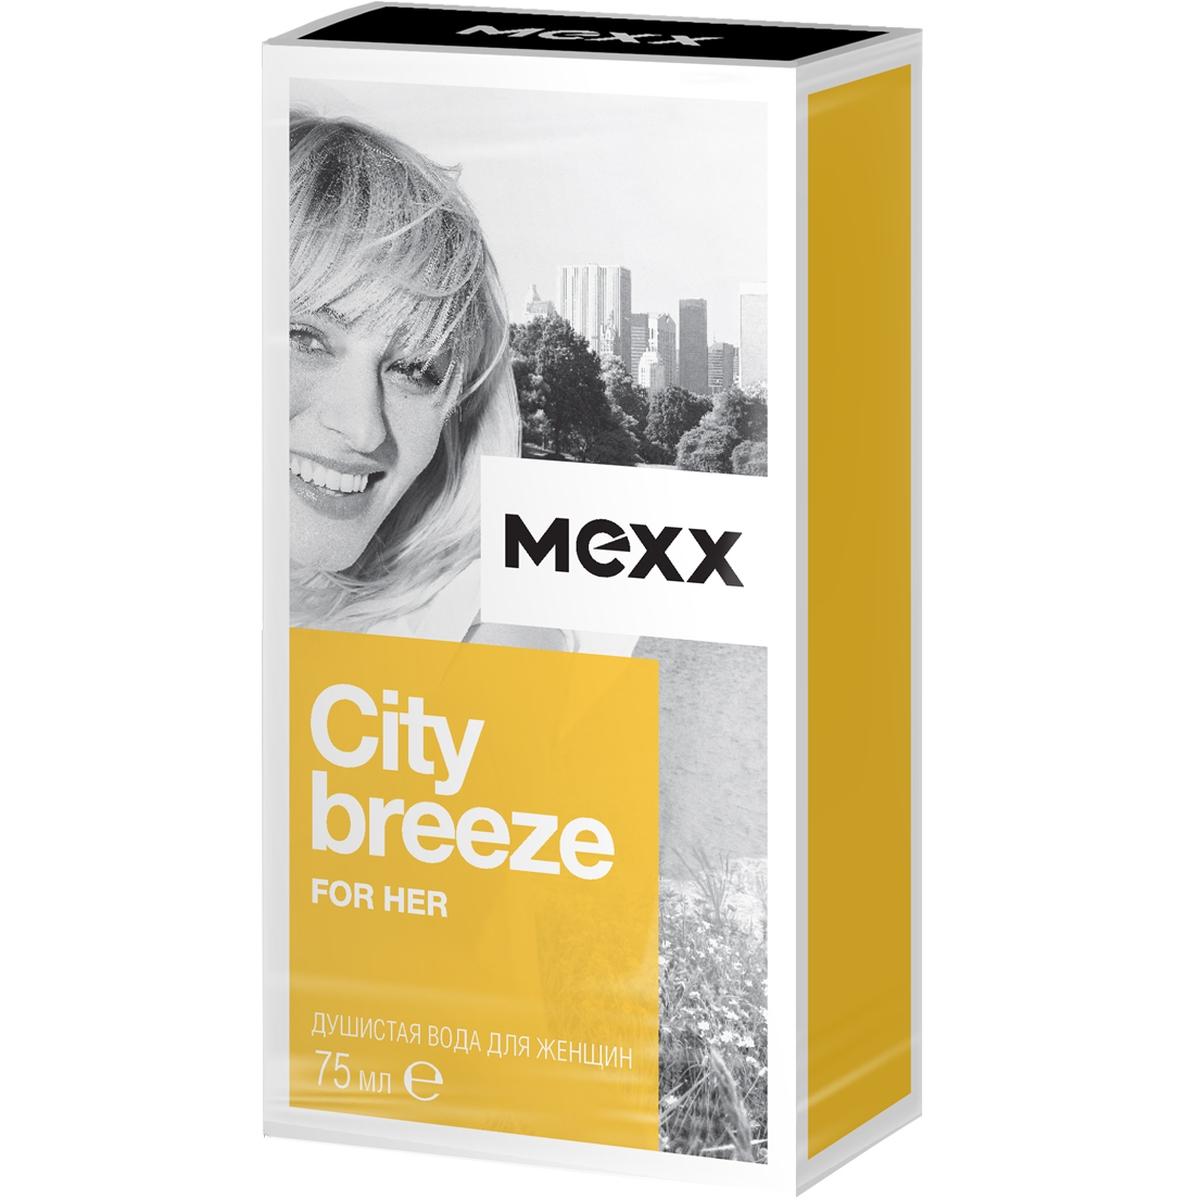 Душистая вода MEXX CITY BREEZE FOR HER 75 мл